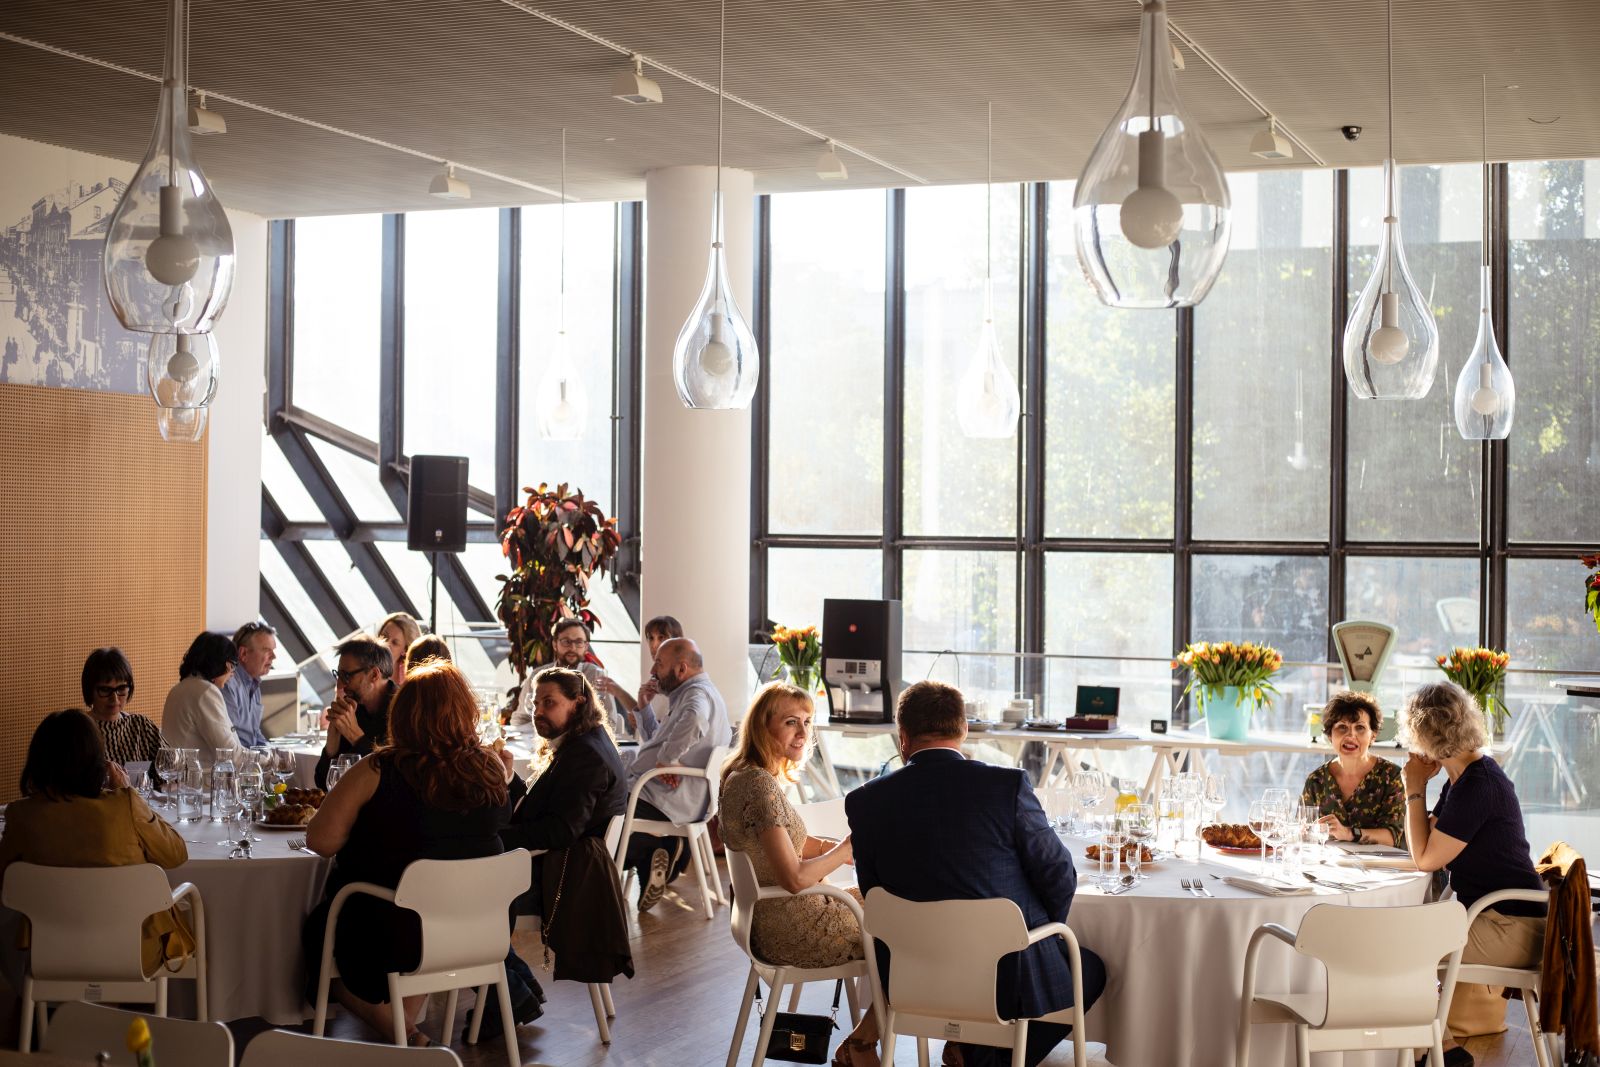 Goście siedzą przy stolikach podczas wydarzenia organizowanego przez Centrum Konferencyjne POLIN w restauracji "Warsze".